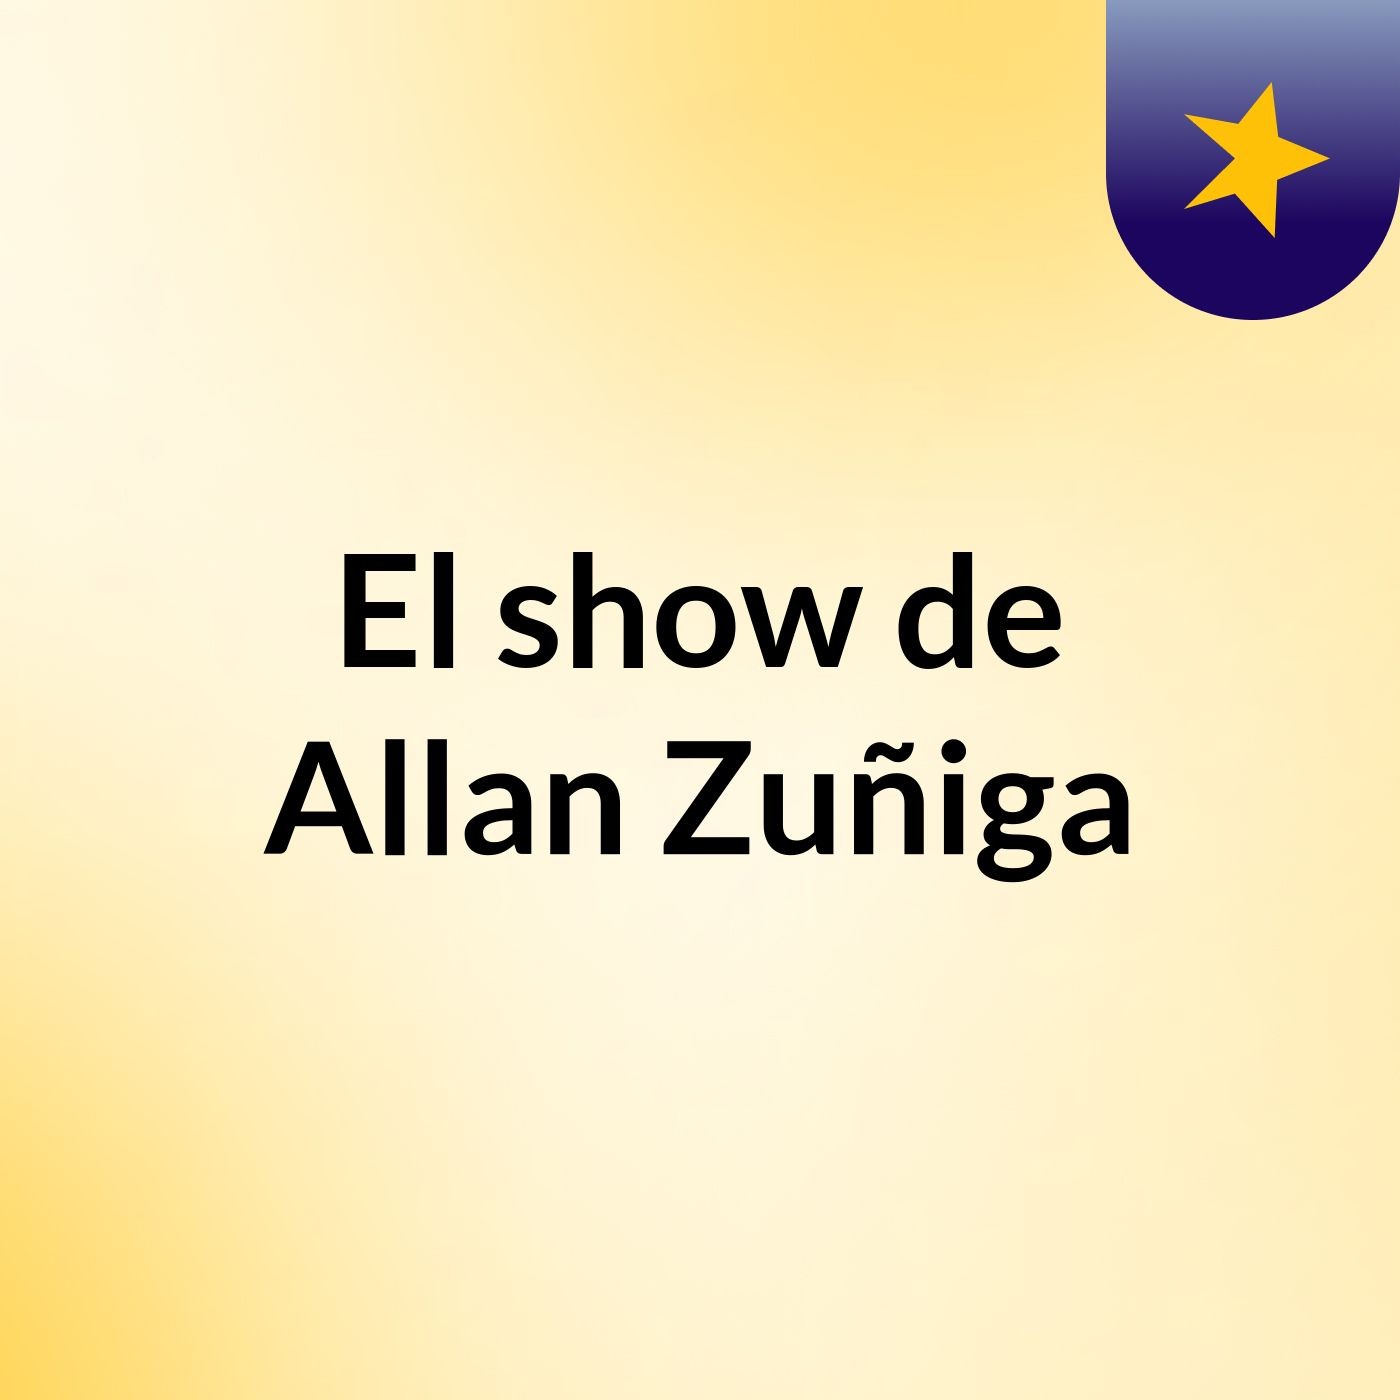 El show de Allan Zuñiga